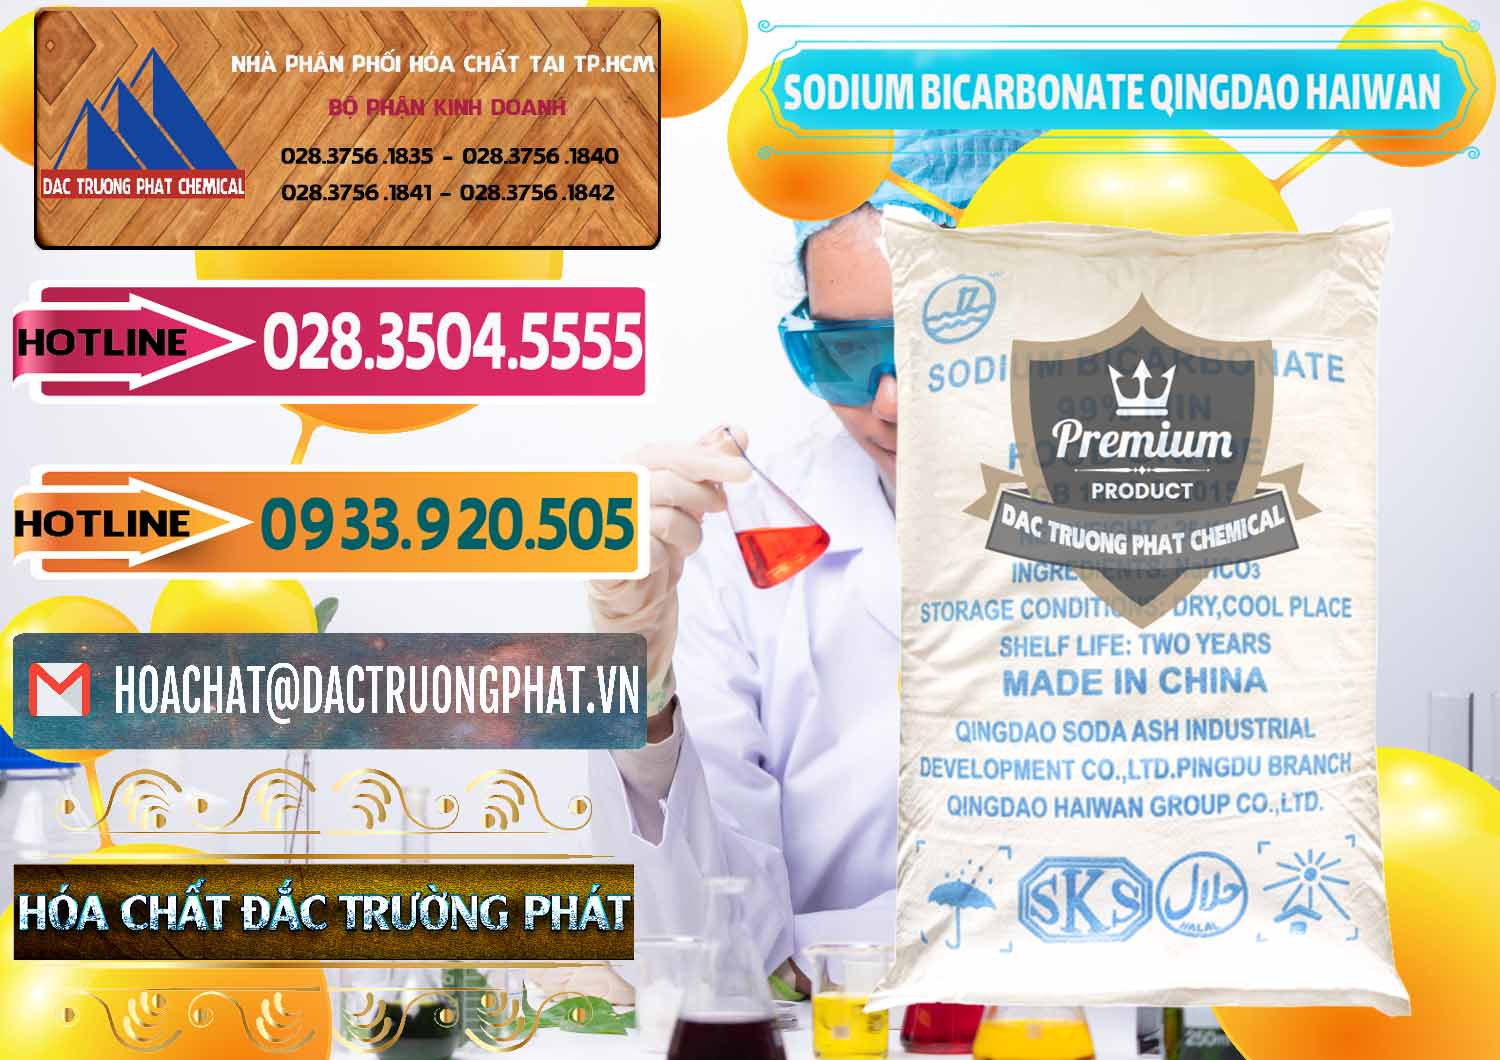 Cty chuyên bán _ phân phối Sodium Bicarbonate – Bicar NaHCO3 Food Grade Qingdao Haiwan Trung Quốc China - 0258 - Cty chuyên cung cấp _ nhập khẩu hóa chất tại TP.HCM - dactruongphat.vn